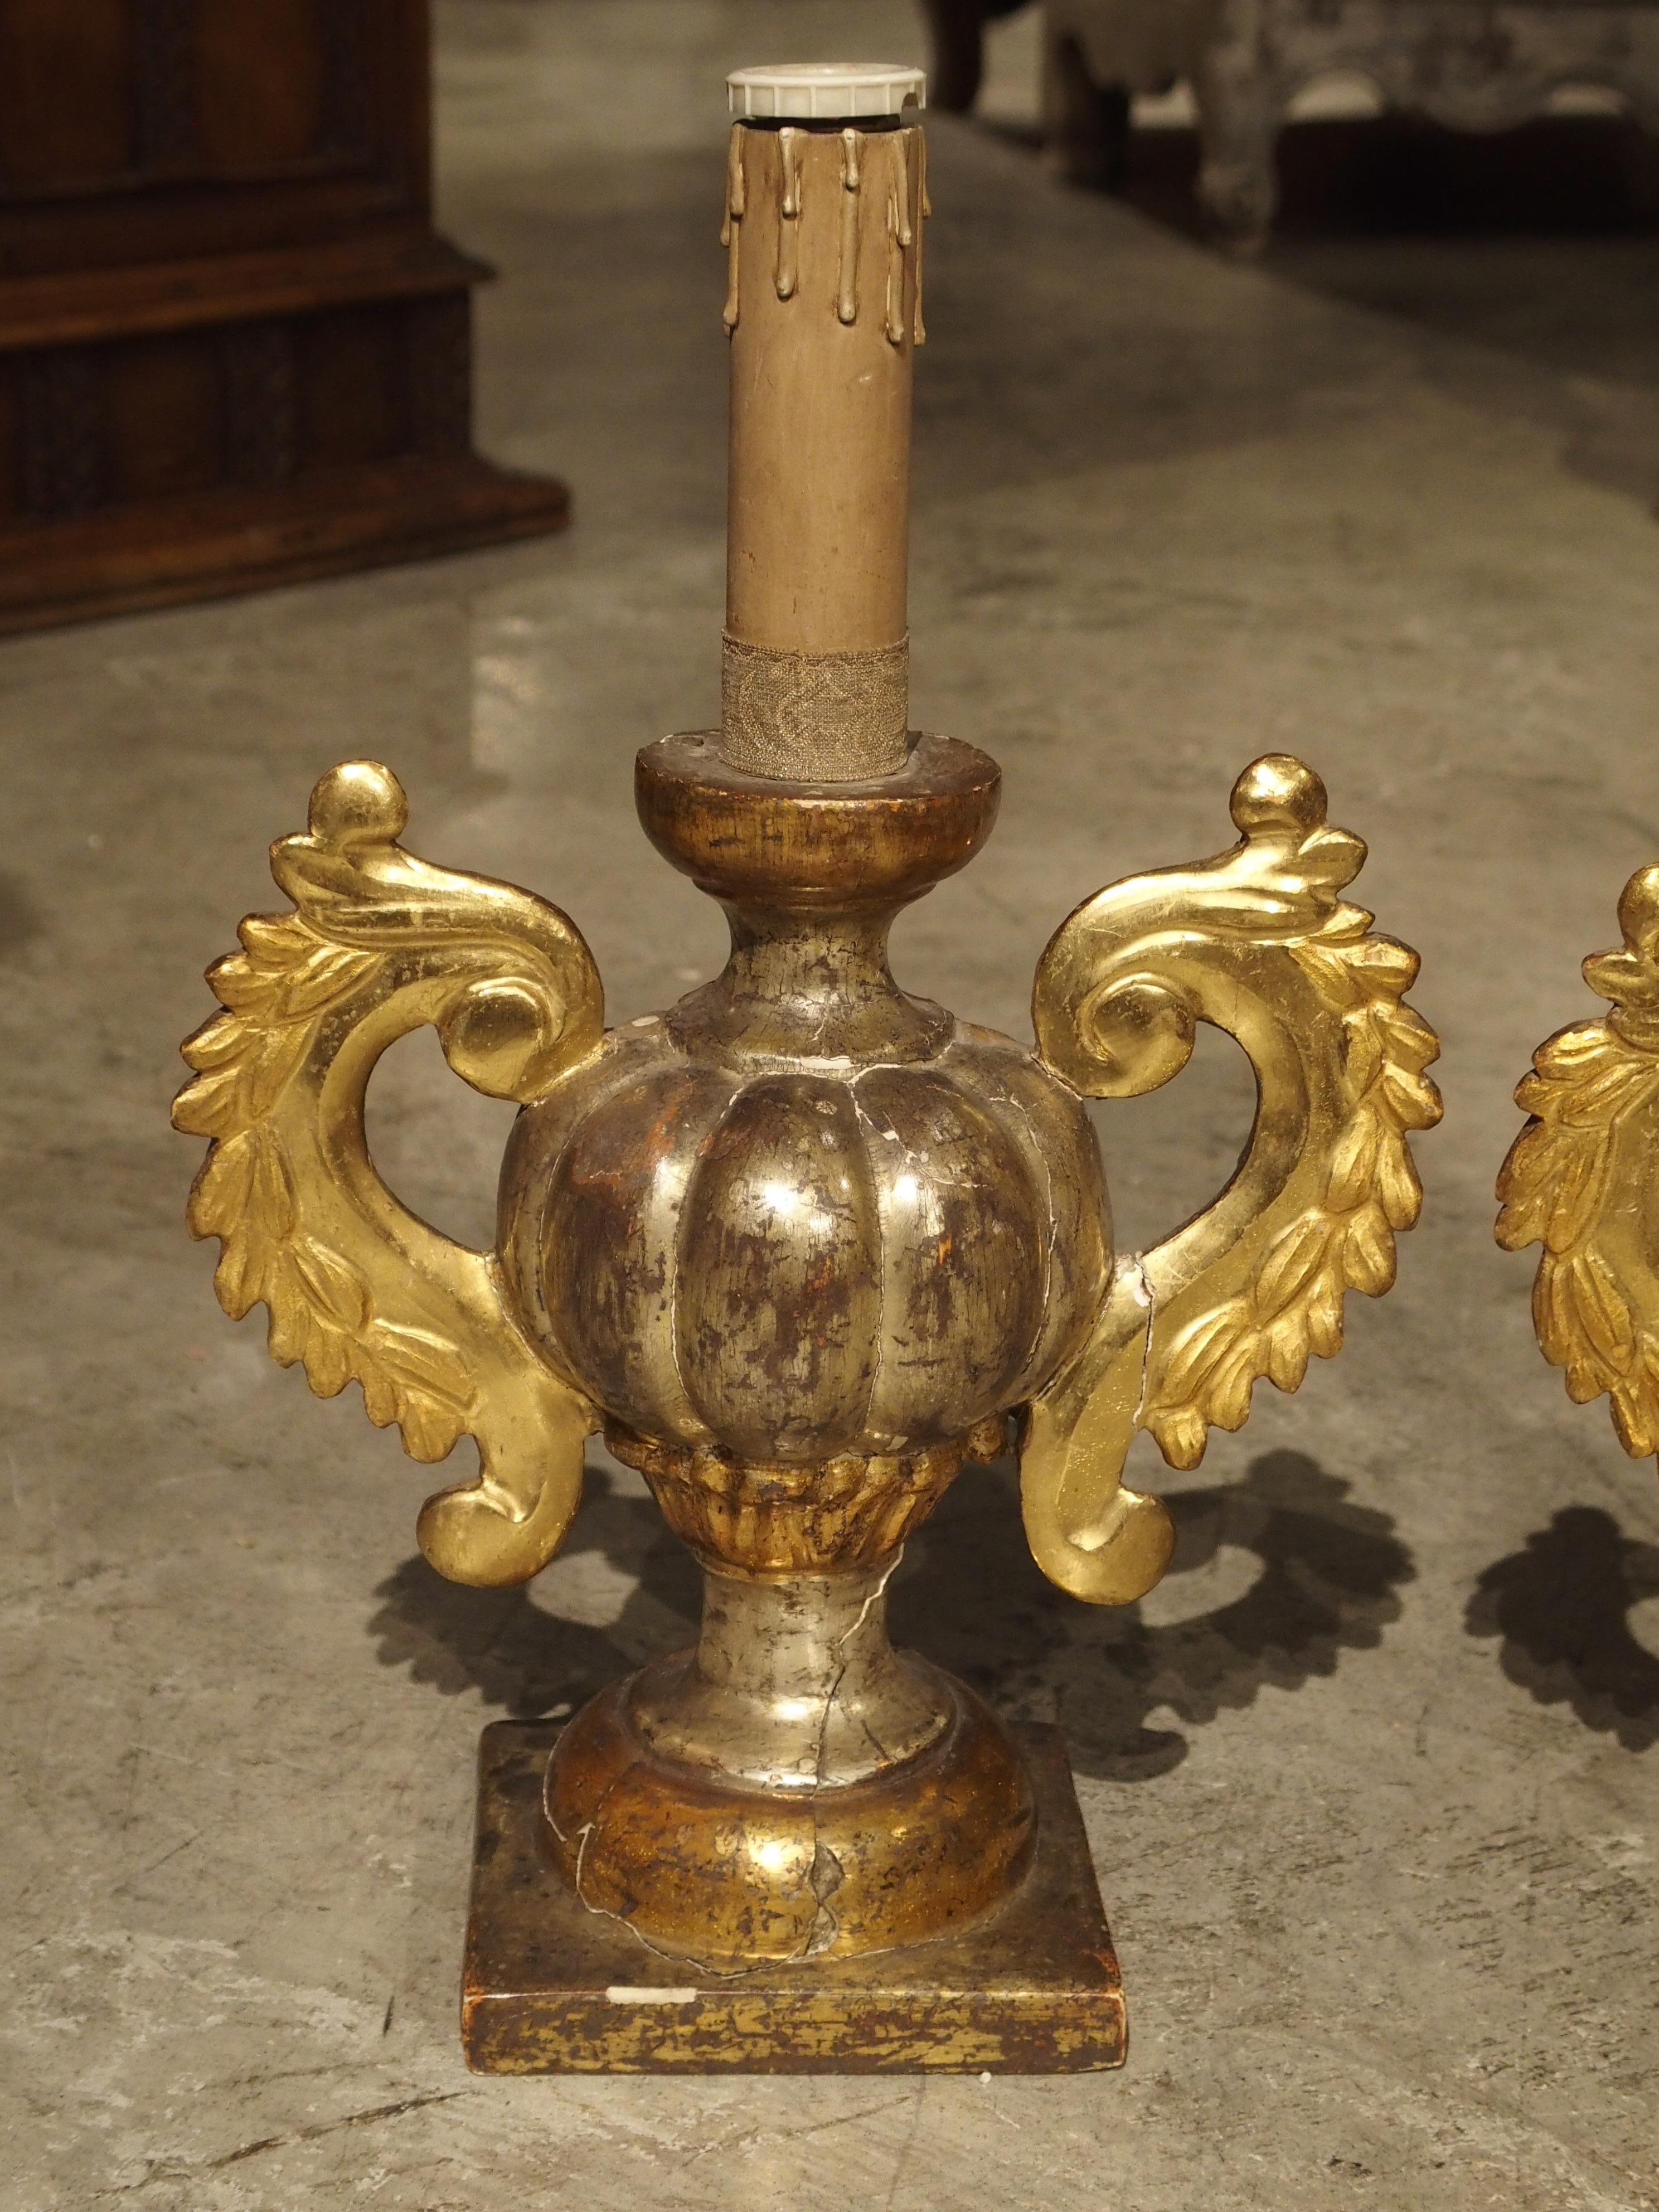 Beinahe-Paar

Diese wunderschönen antiken italienischen Leuchter wurden häufig in Kirchen verwendet. Die Vorderseiten der Leuchter oder die sichtbaren Teile waren immer verziert, die Rückseiten waren schlicht gehalten. Sie werden als